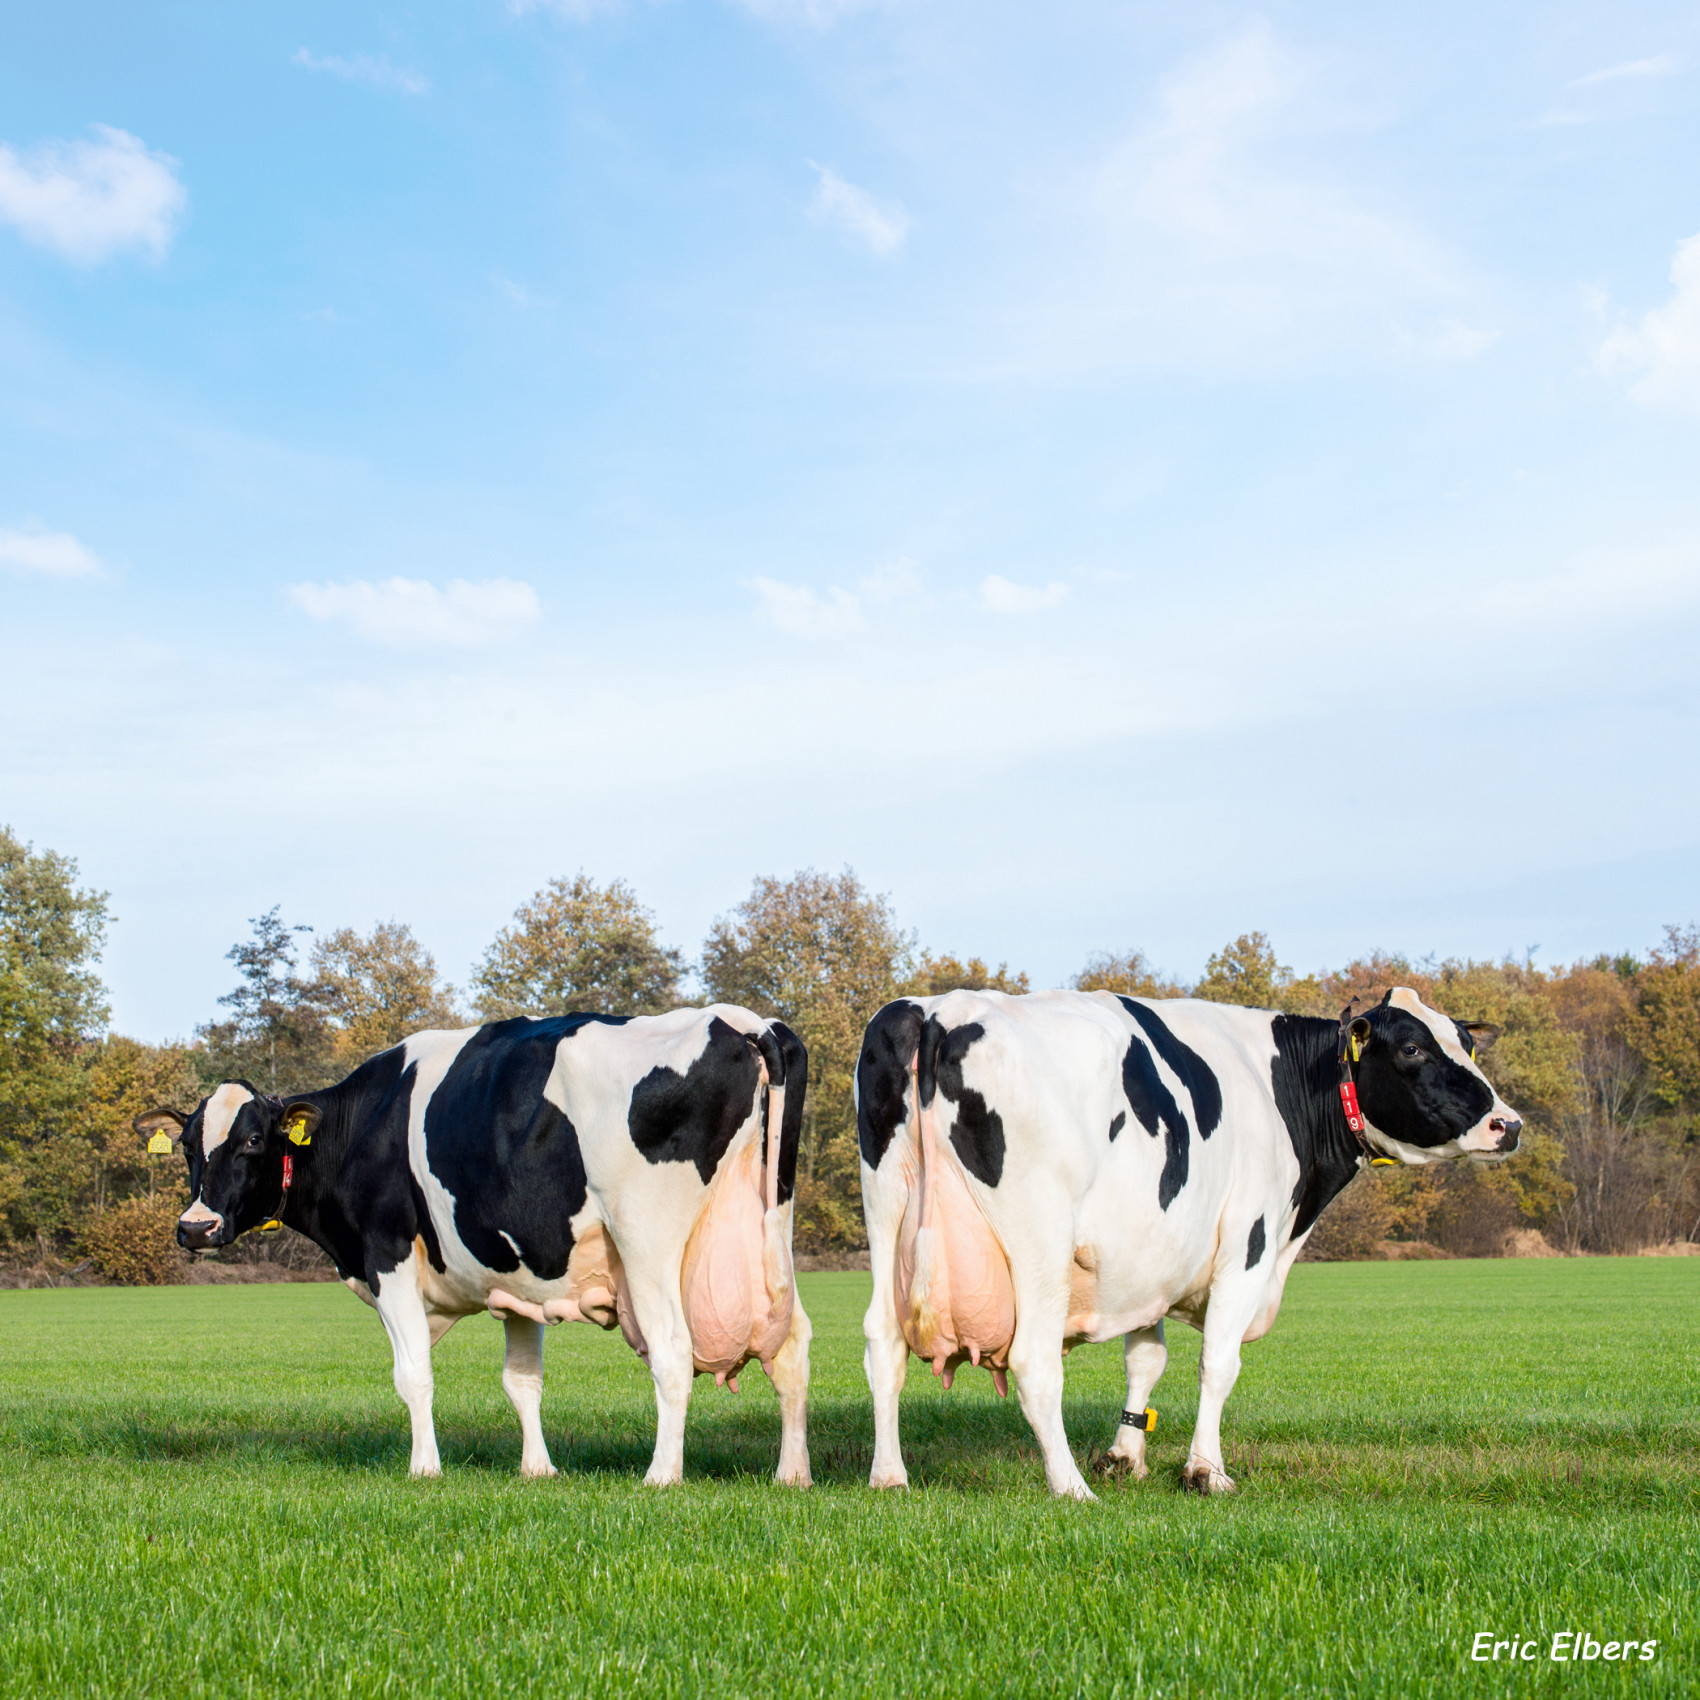 Cows in grassland